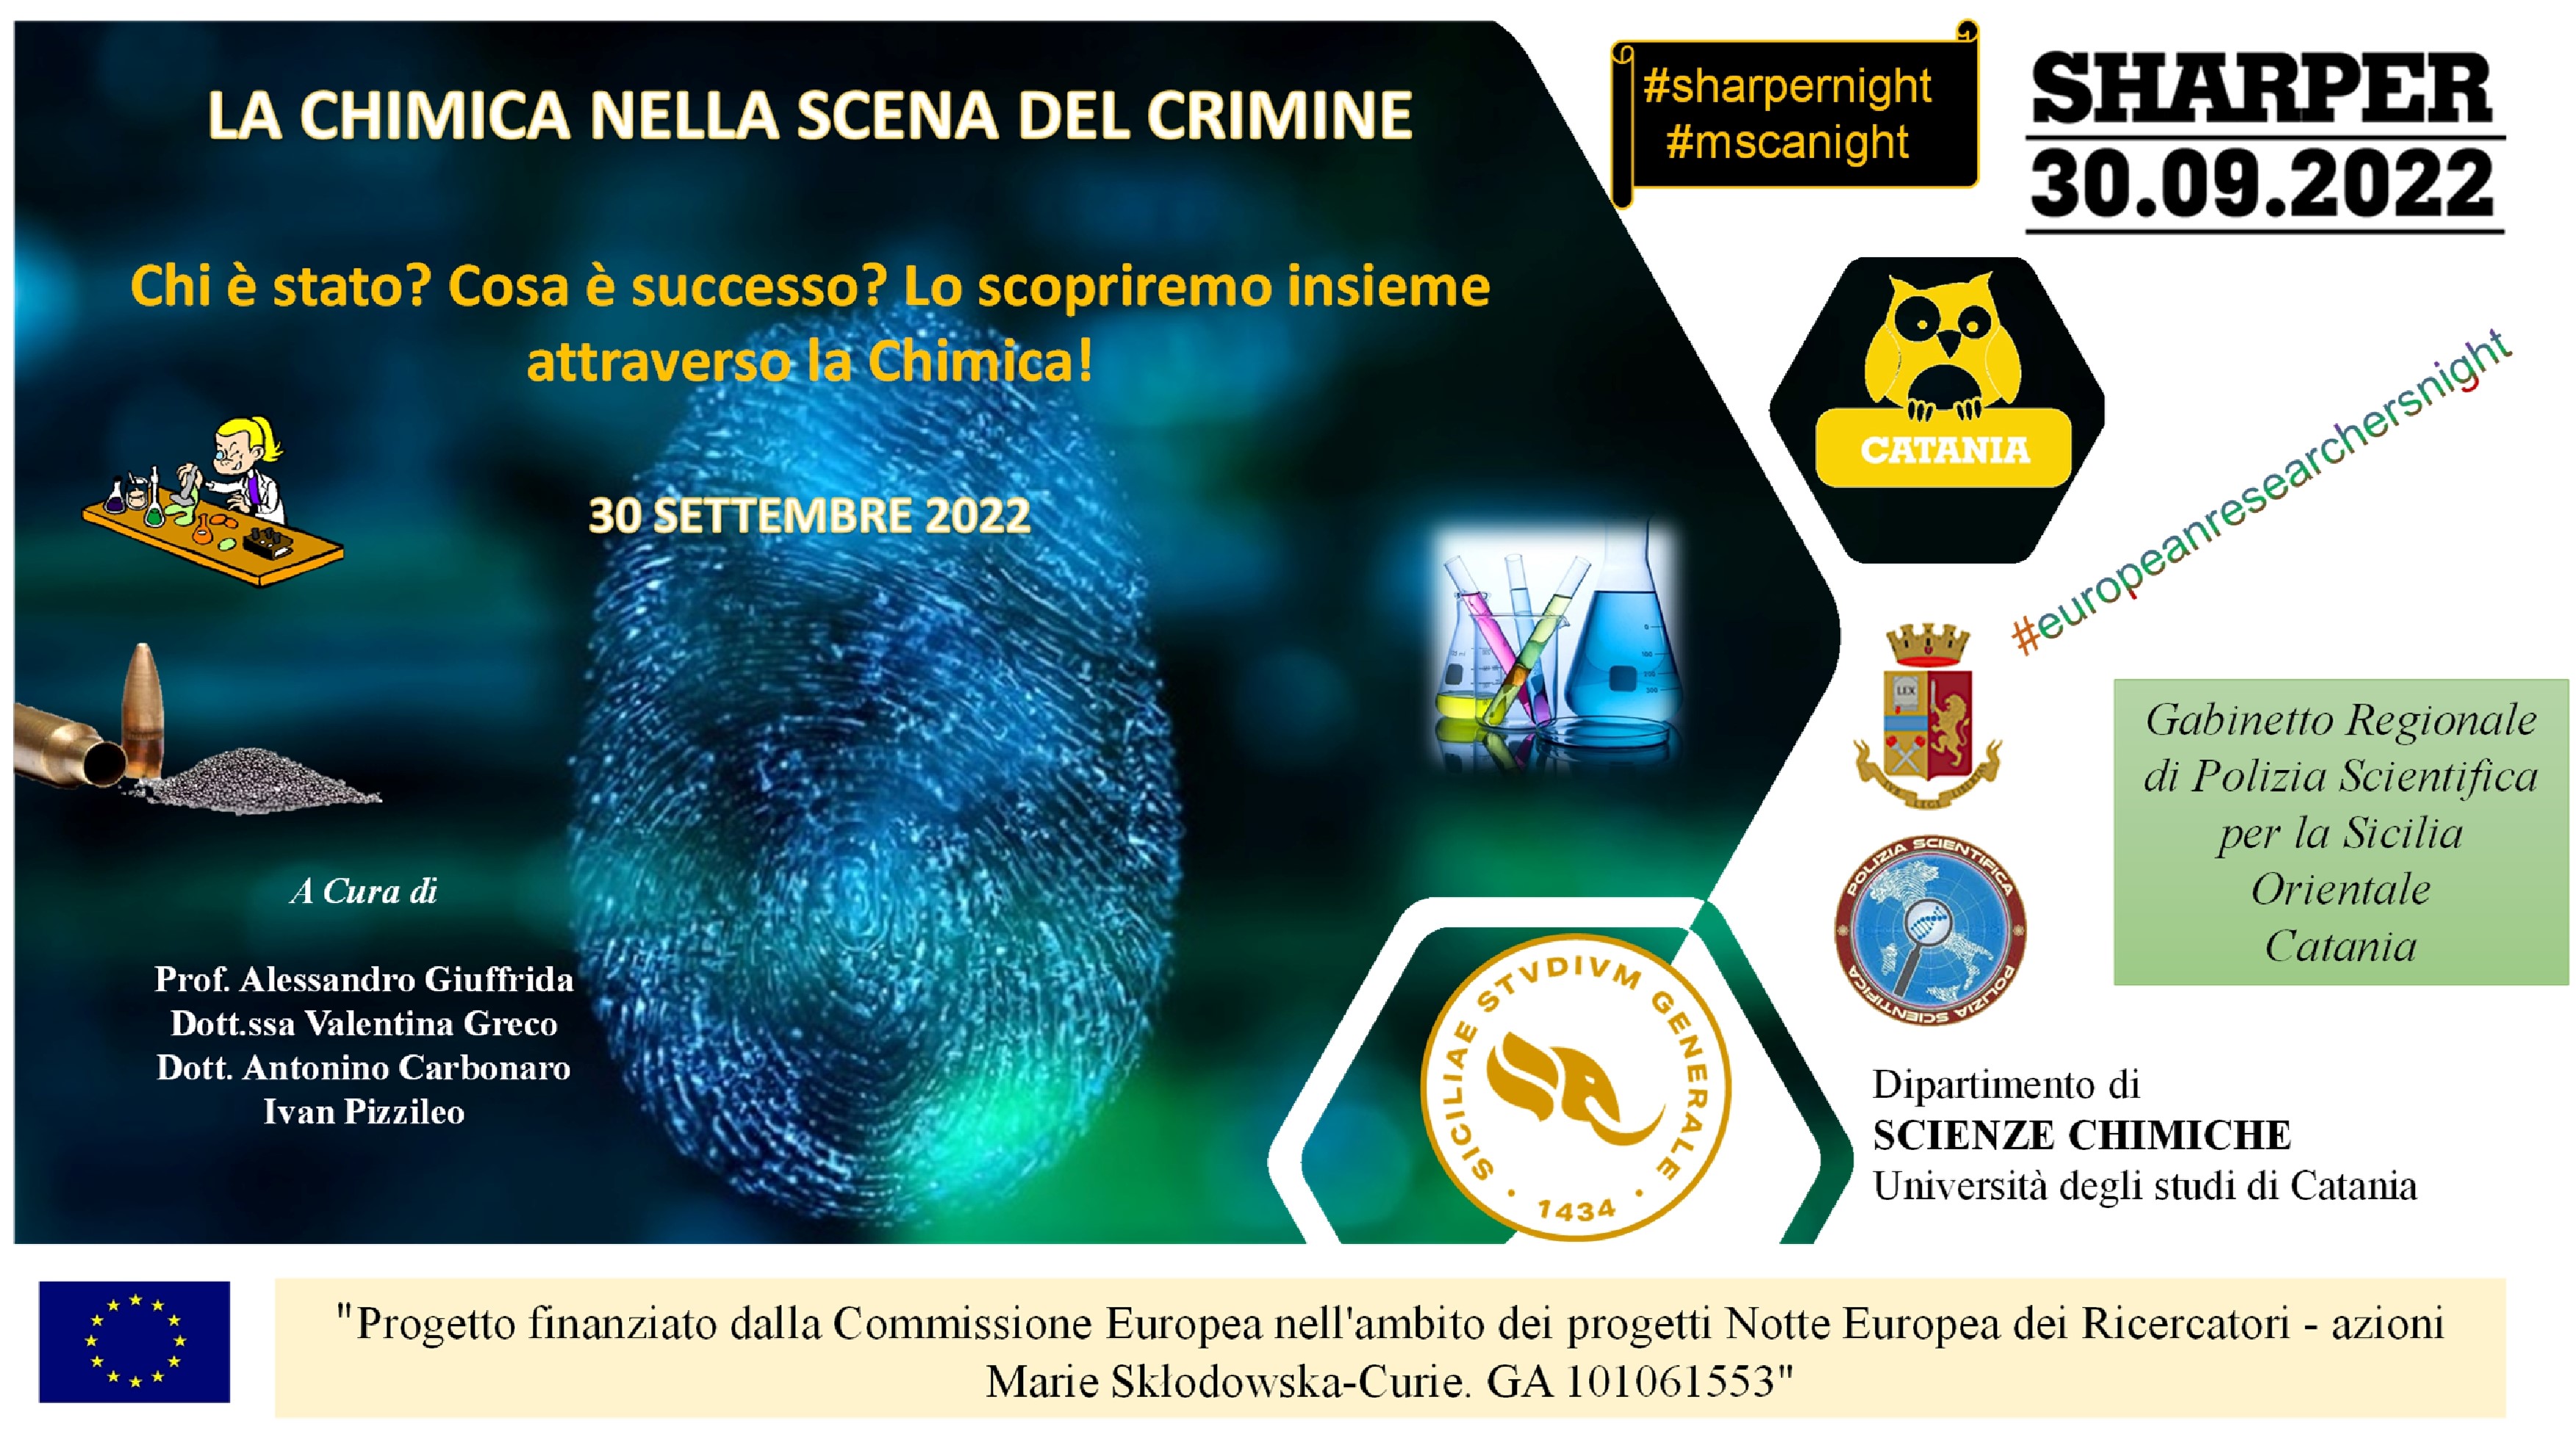 Polizia Scientifica, DSC - Unict, Università di Catania